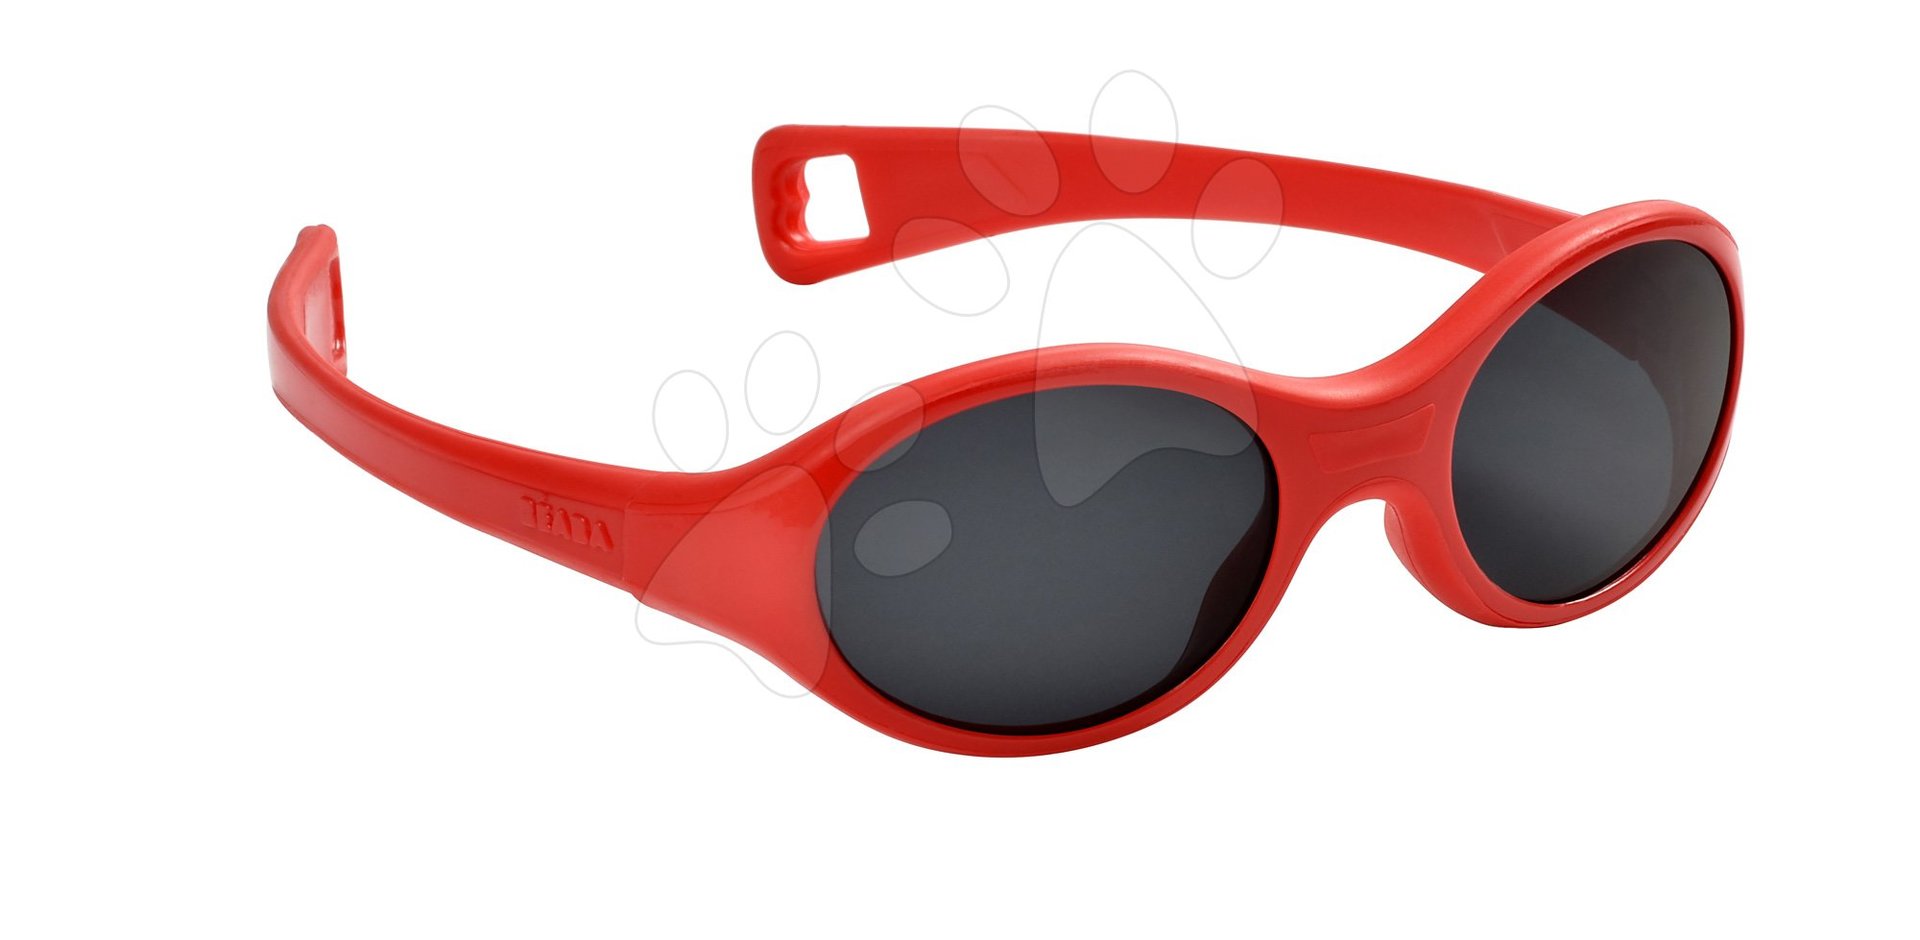 Slnečné okuliare - Detské slnečné okuliare Beaba Kids M od 12 mesiacov s UV filtrom 3 červené